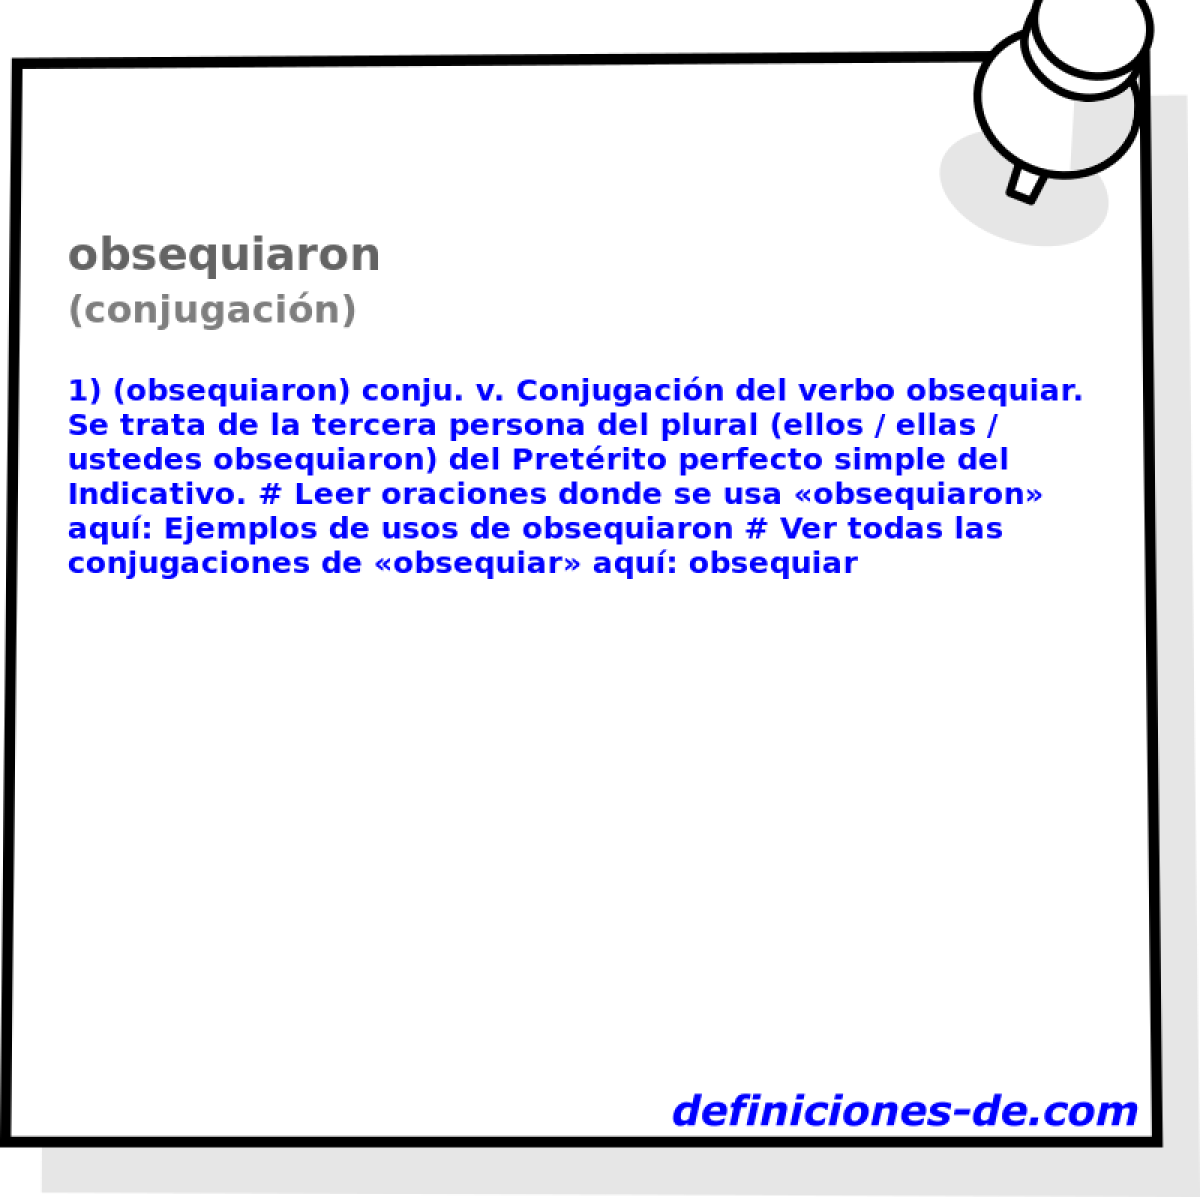 obsequiaron (conjugacin)